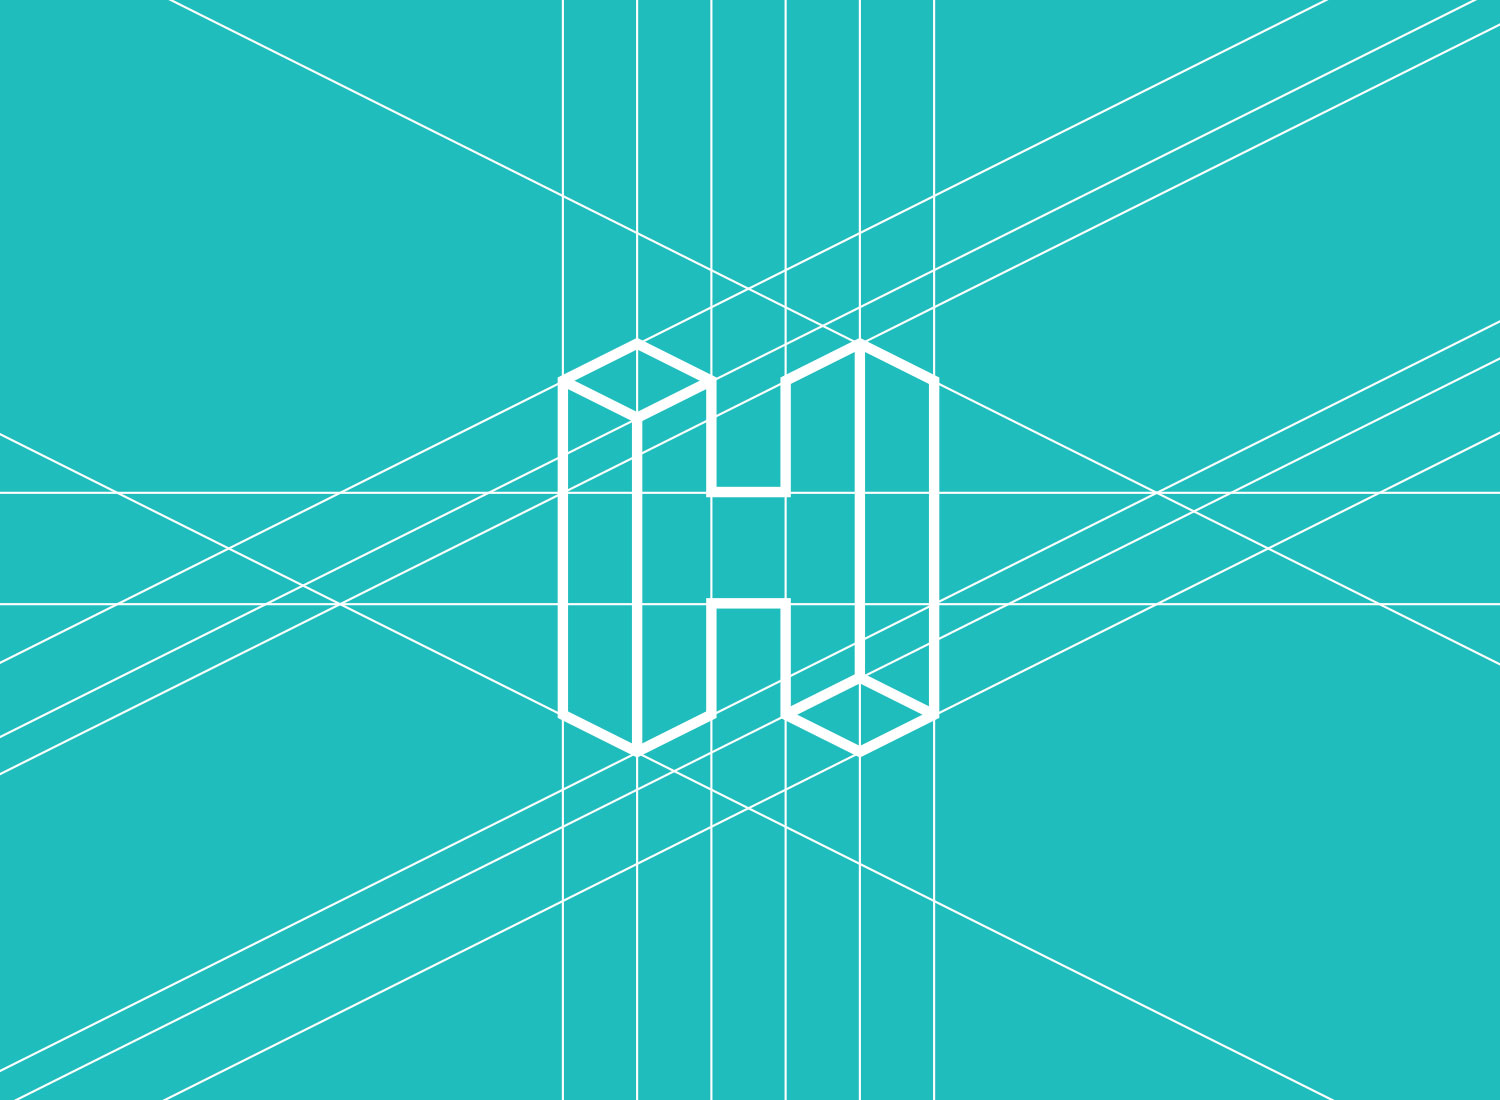 The Headway Arts Logo